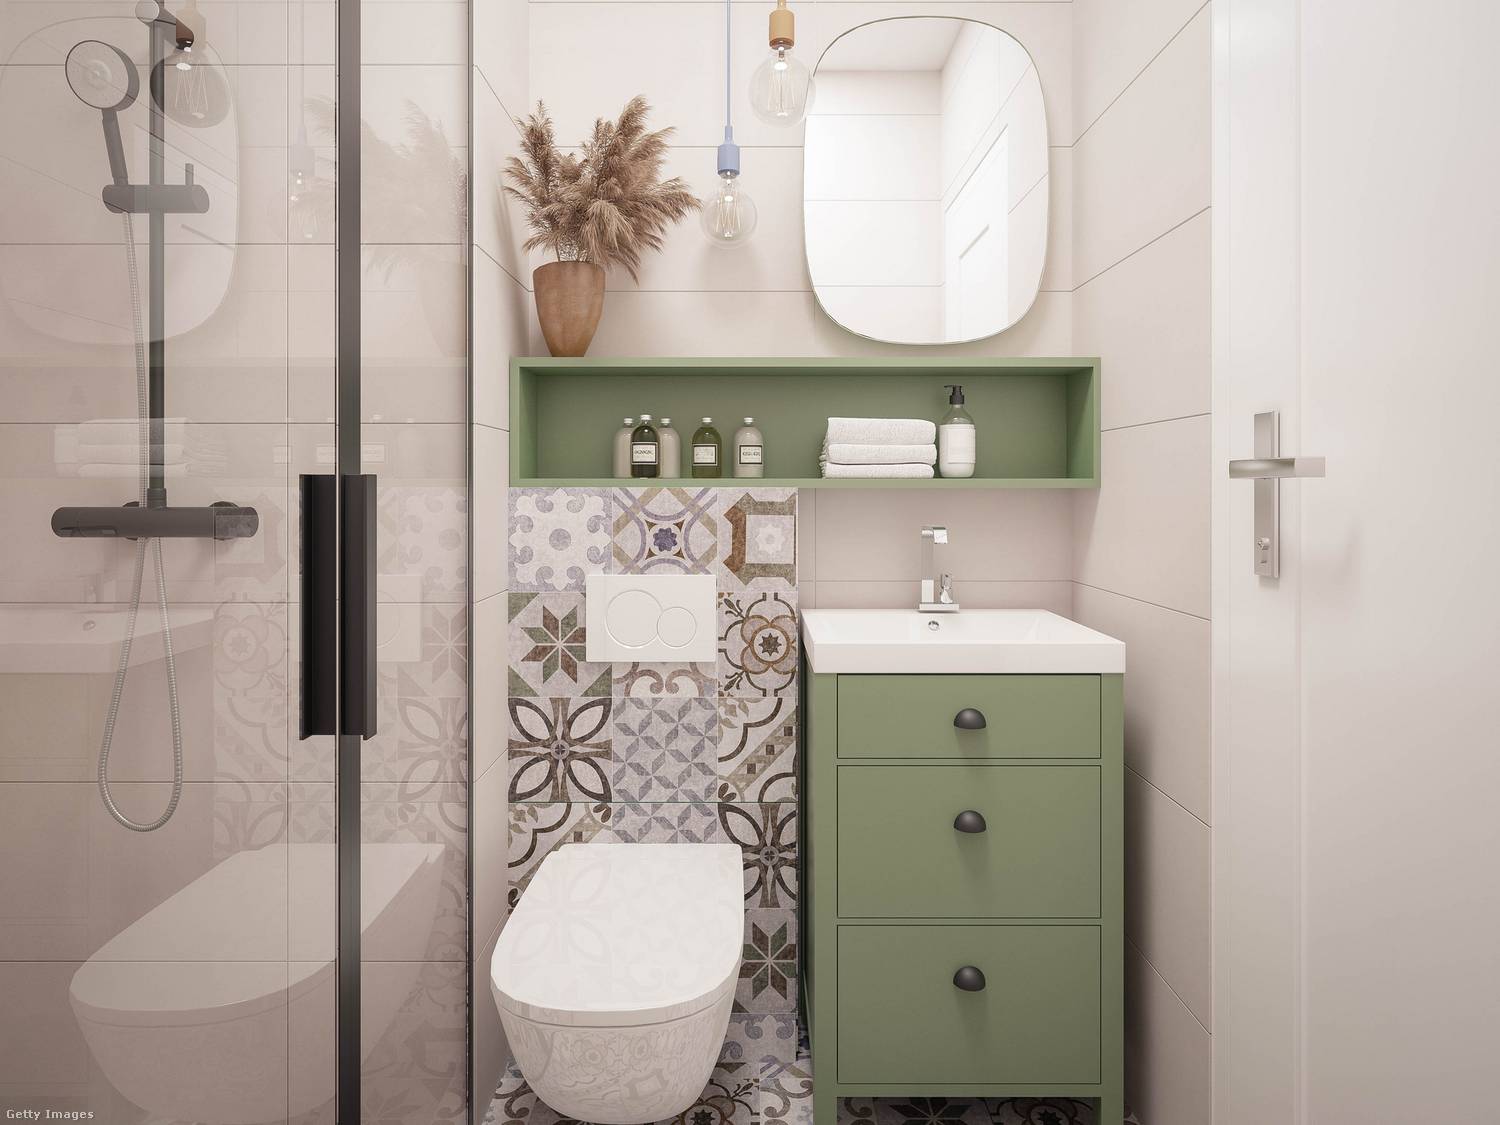 Egy jól eltalált szín- és mintaválasztás az aprócska fürdőszobák hangulatán is meglátszik.